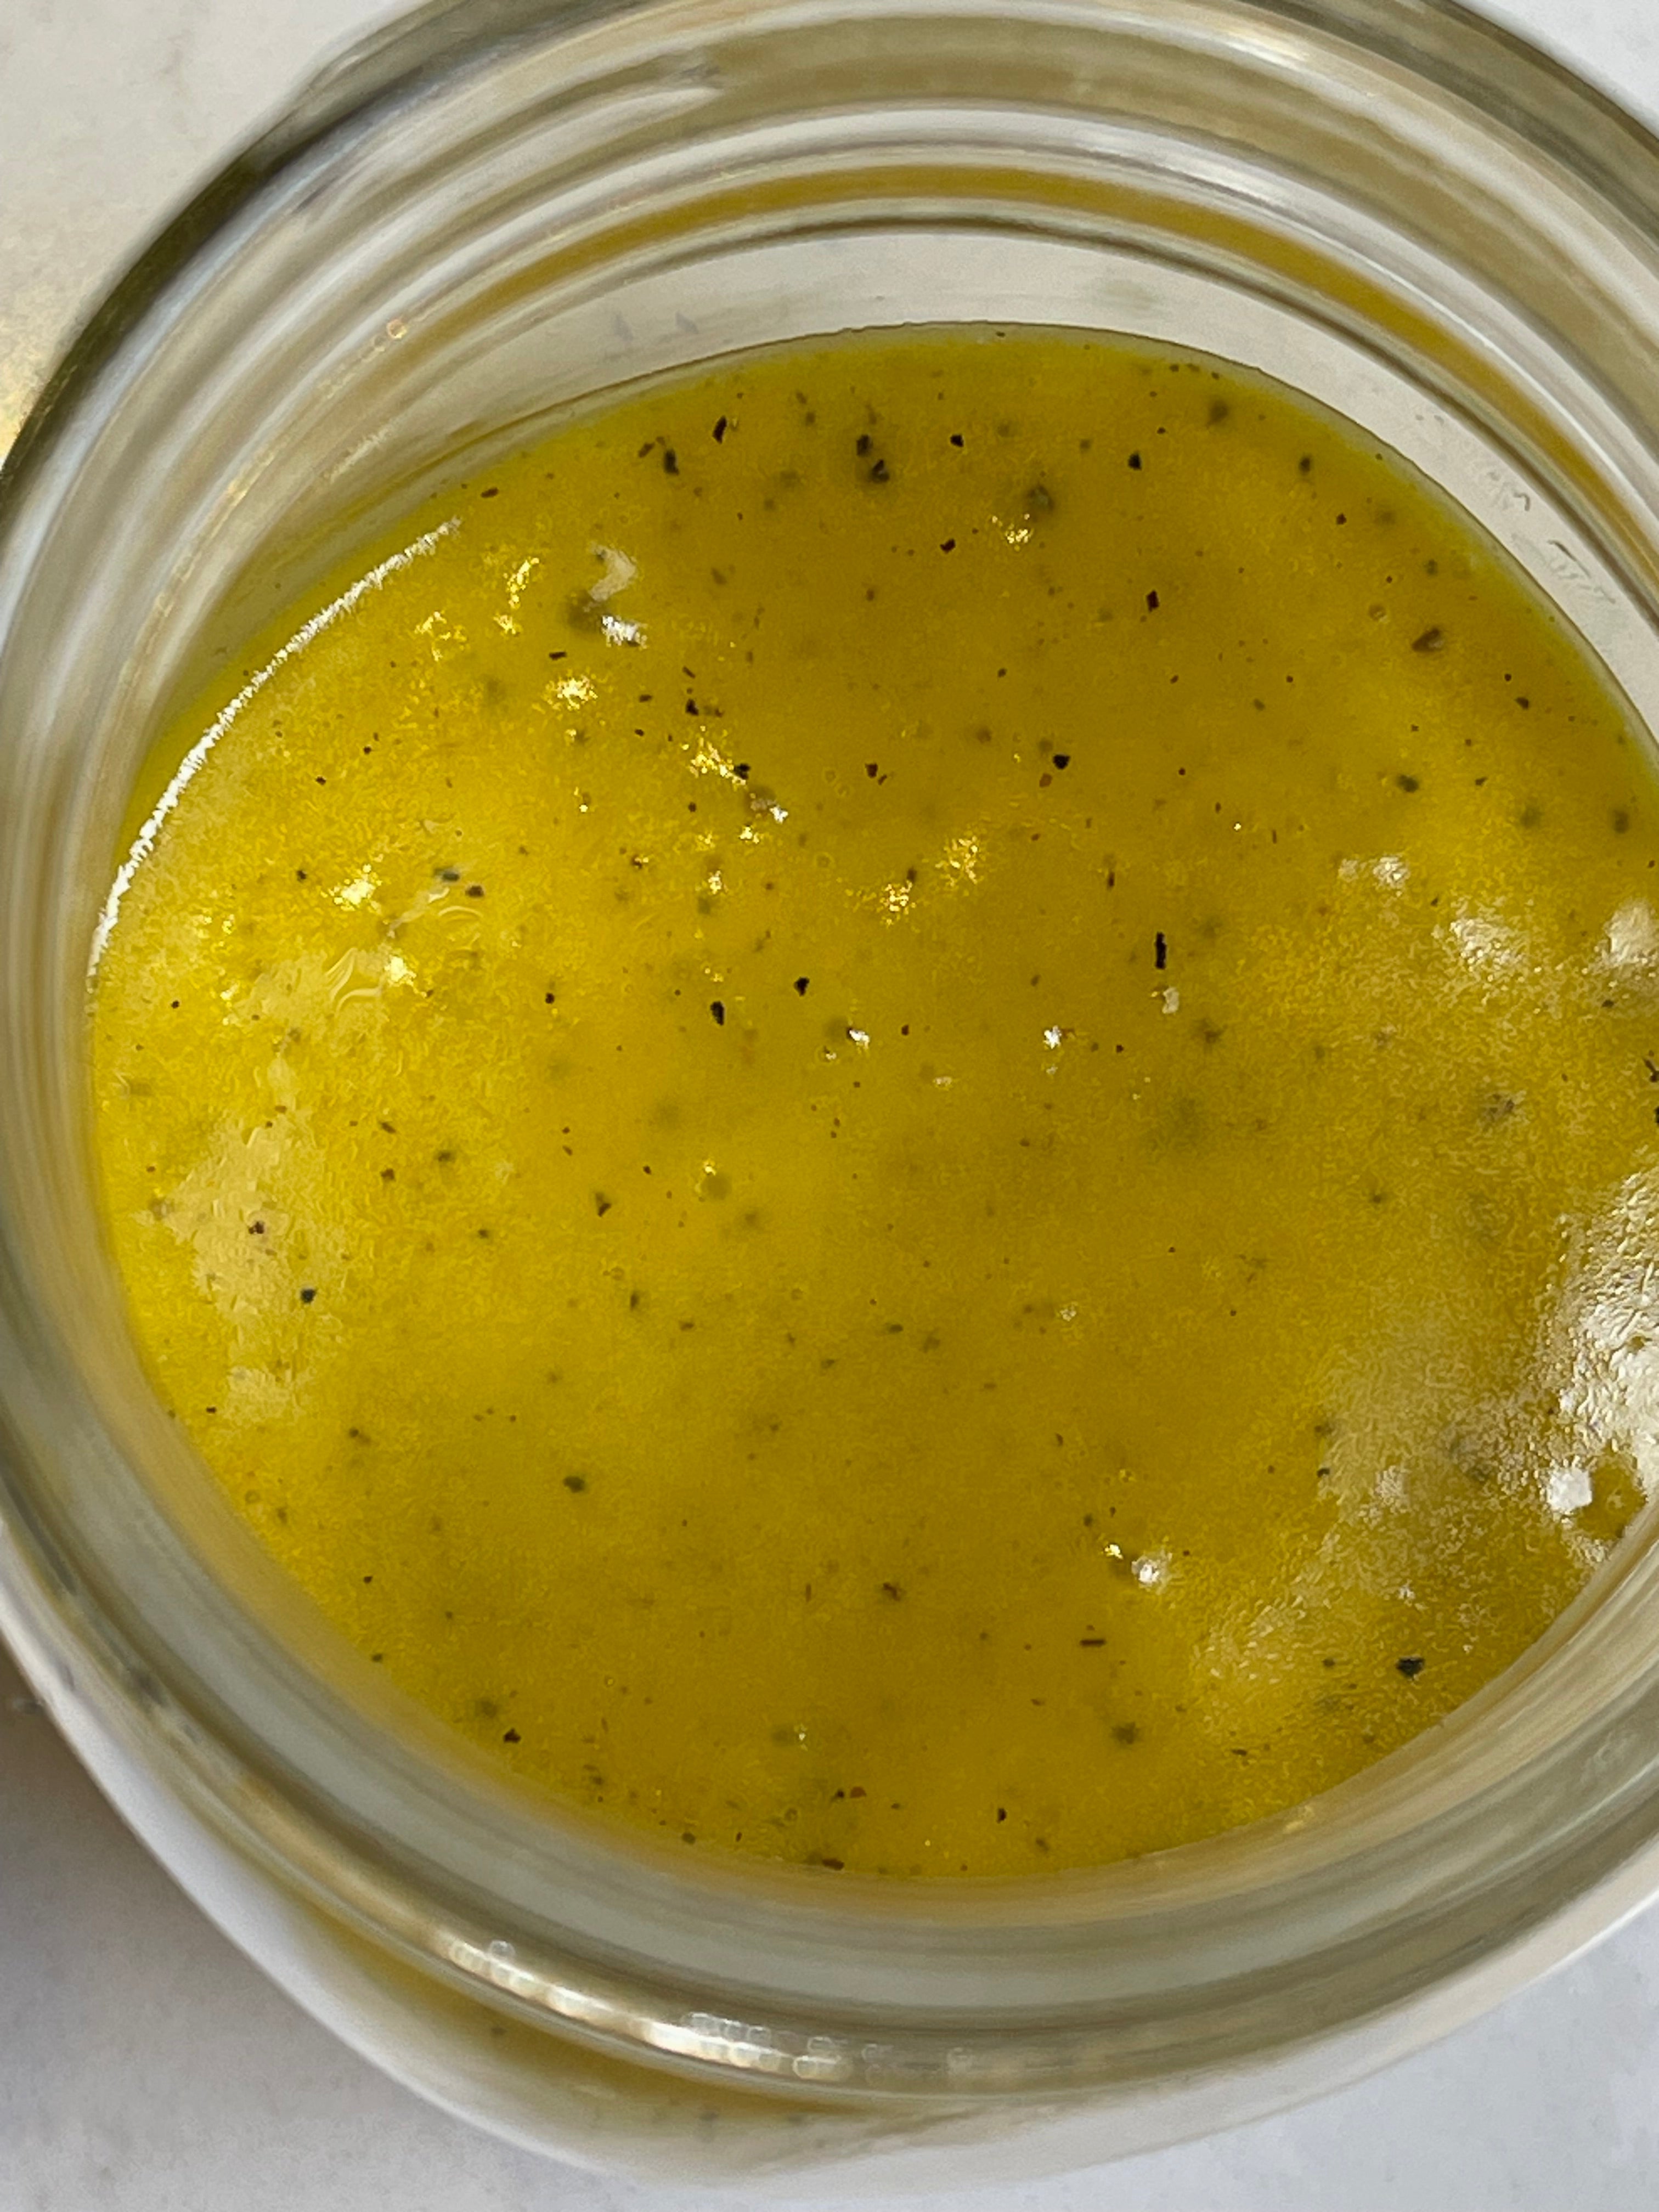  A yellow Vinaigrette in a jar